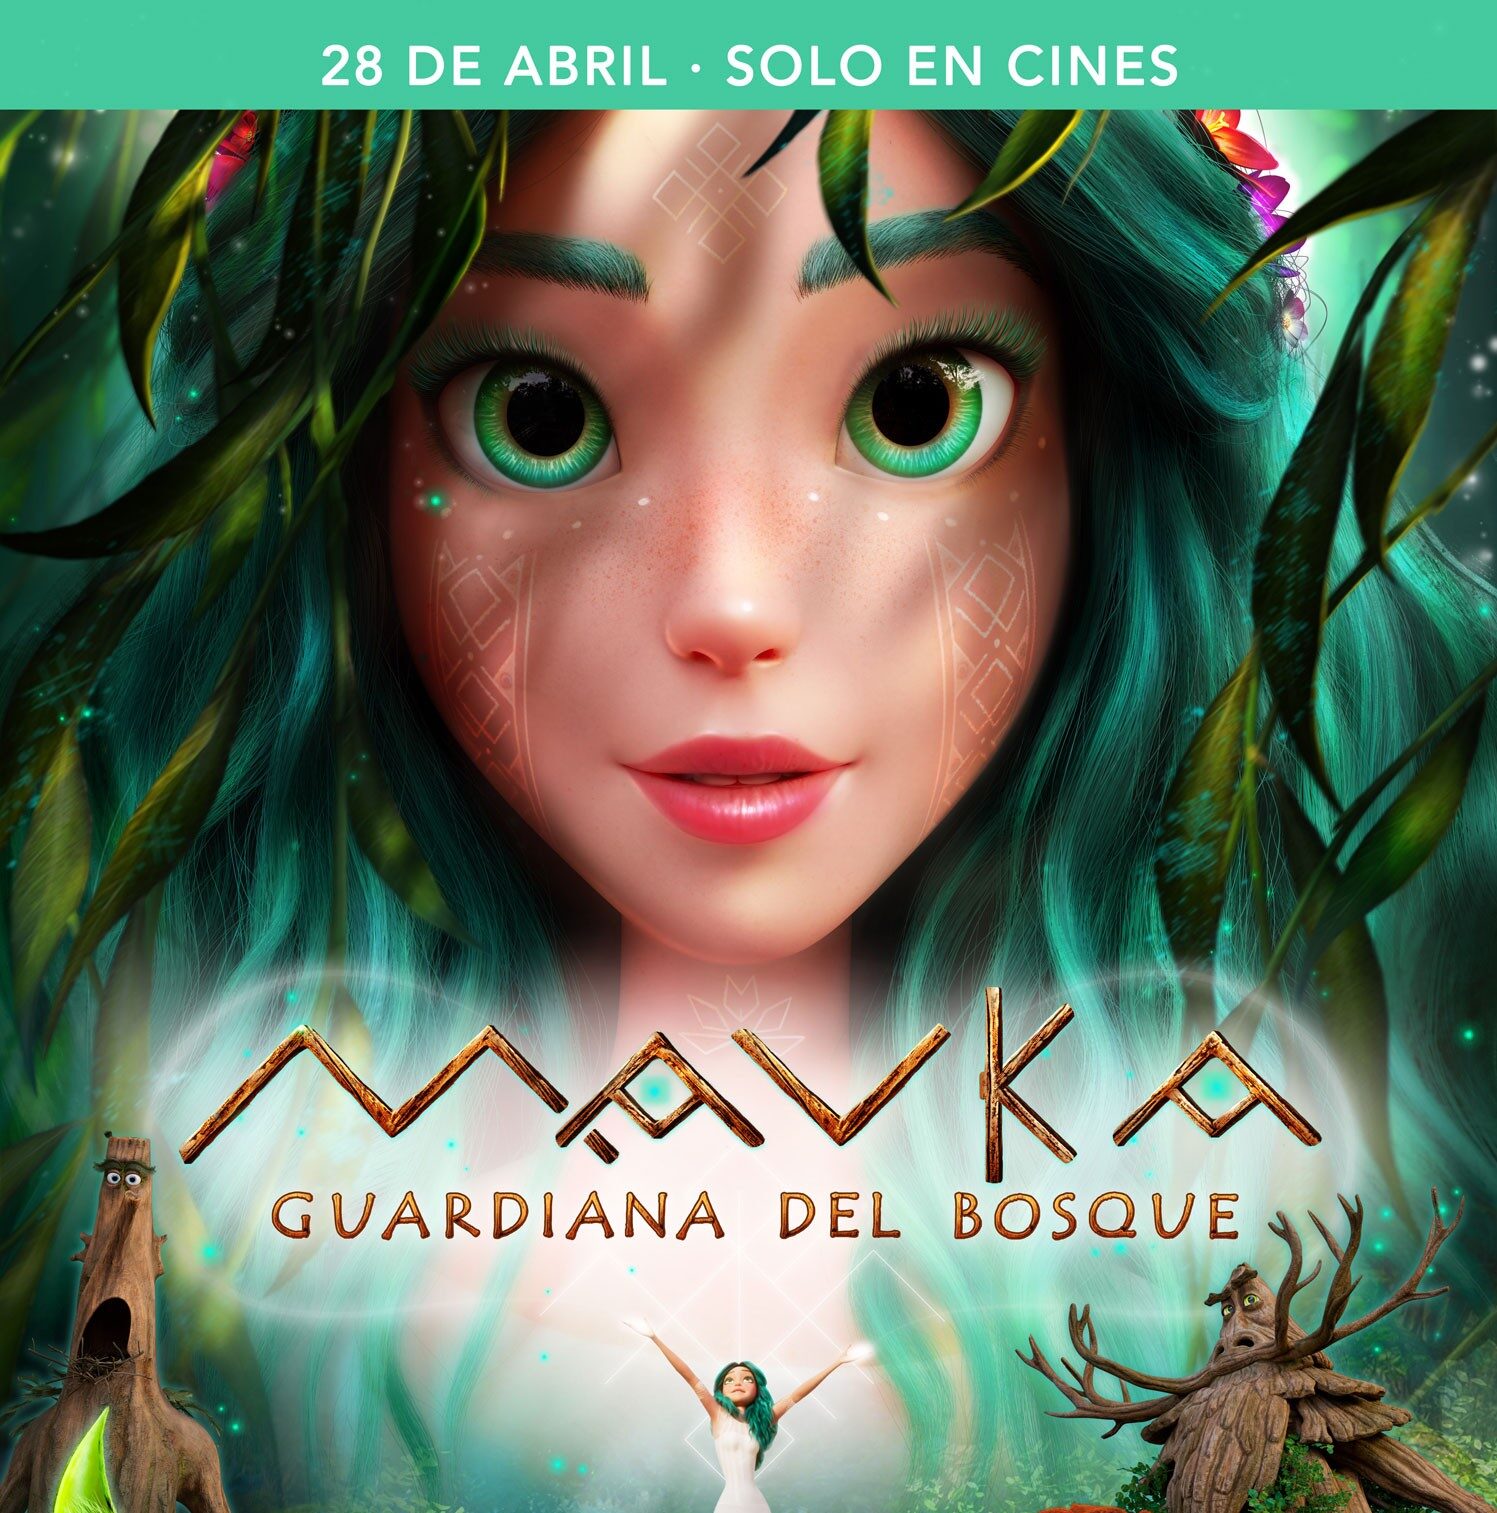 MAVKA, Guardiana del bosque llega a los cines de España